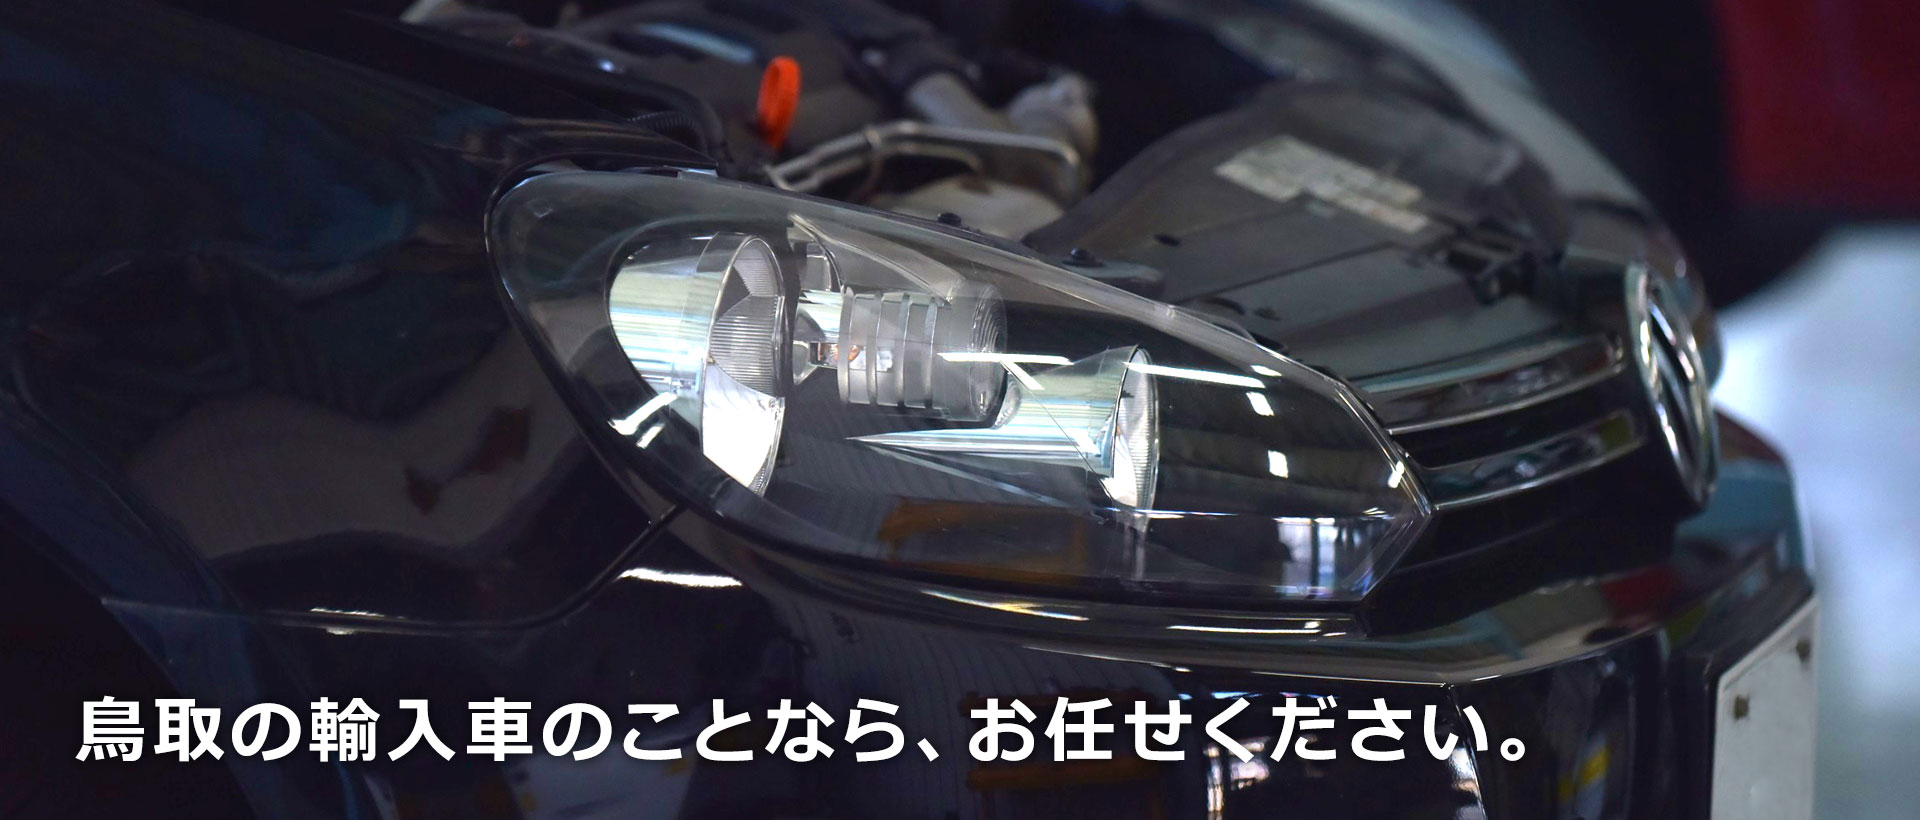 鳥取の輸入車のことなら、お任せください。